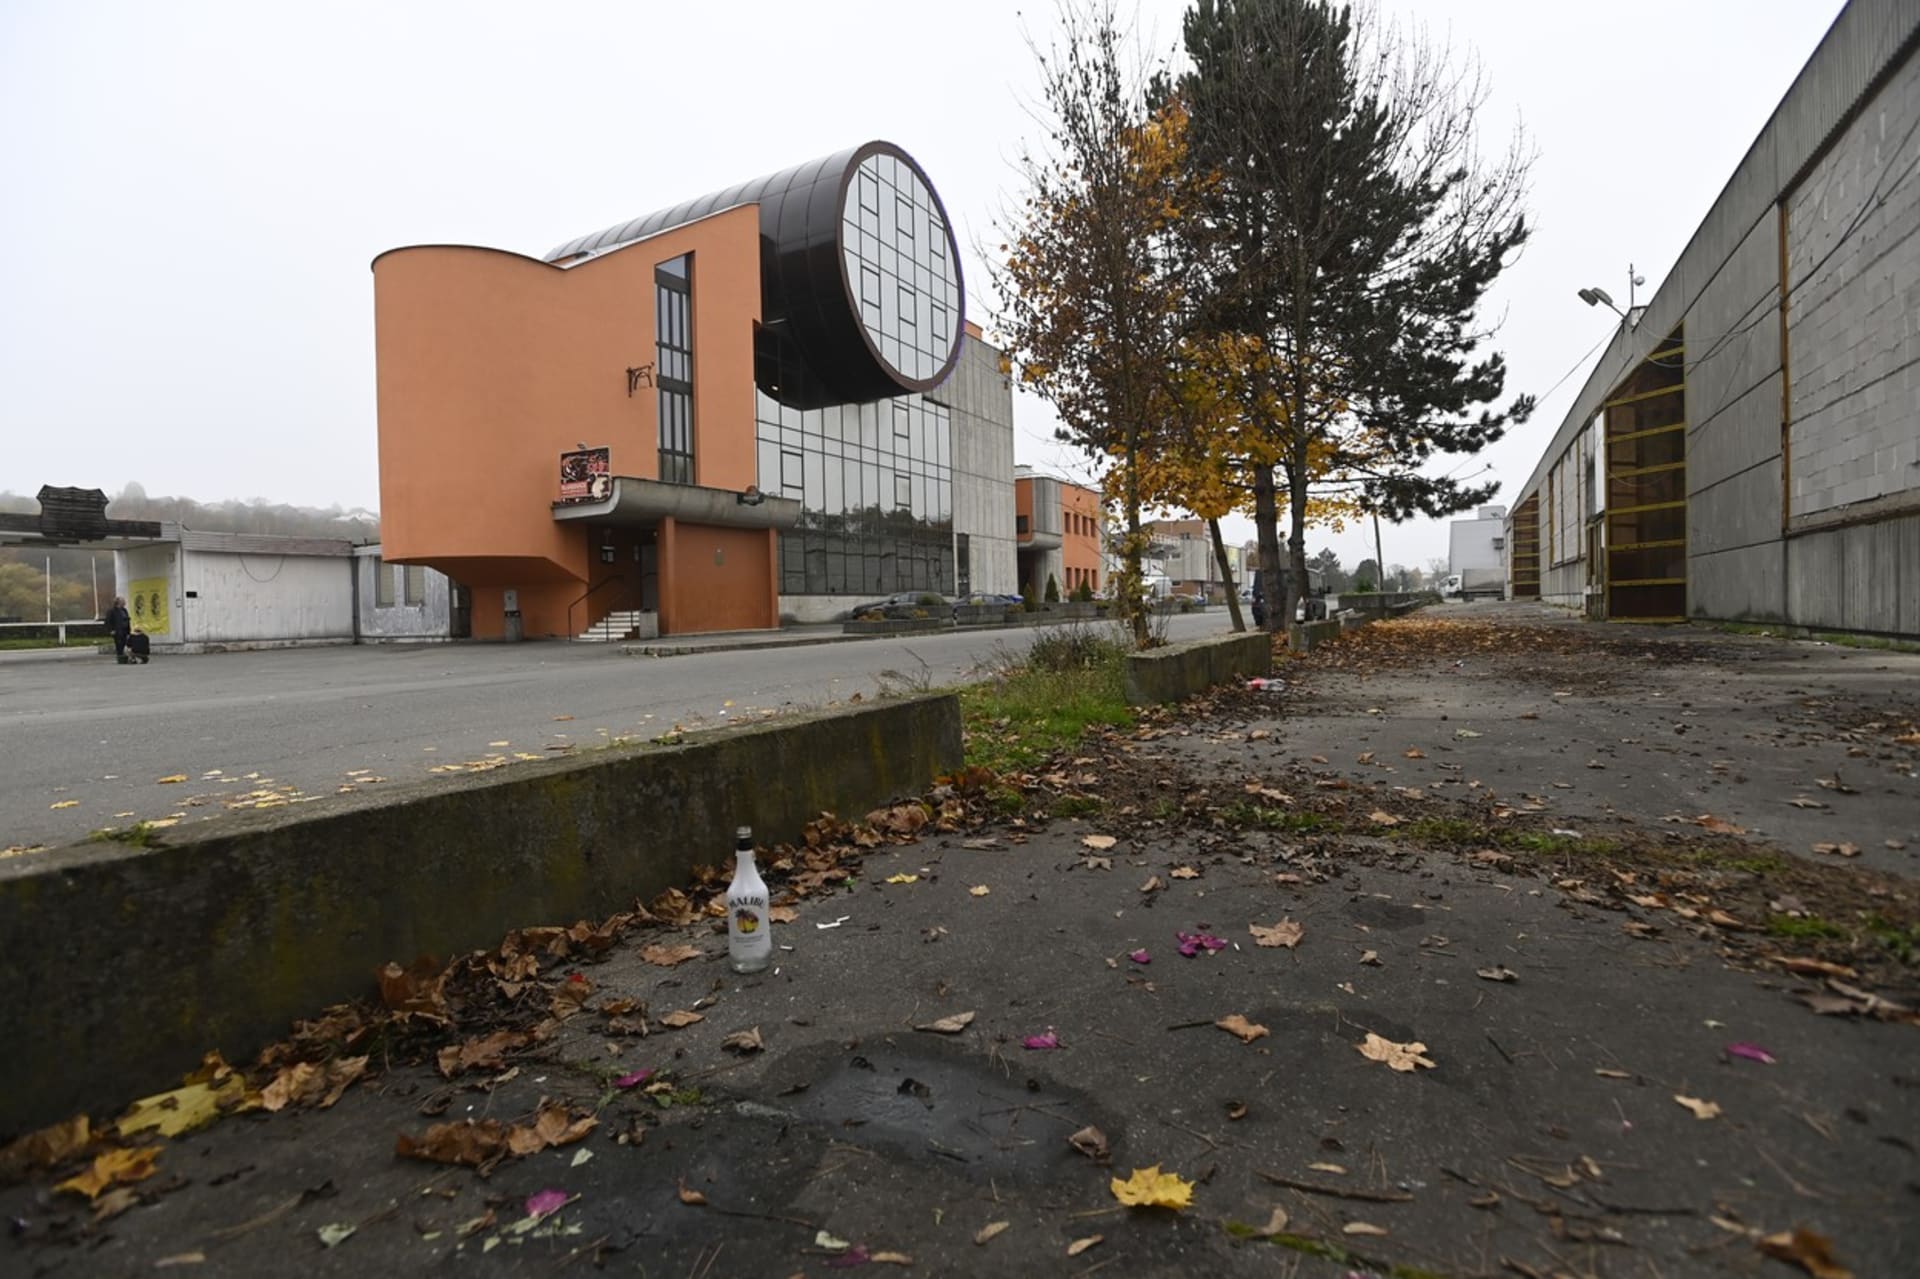 Na oslavě Halloweenu na diskotéce ve Slušovicích na Zlínsku (budova na snímku) se v noci na 30. října 2022 zranilo osm mladých lidí, z toho pět vážně.